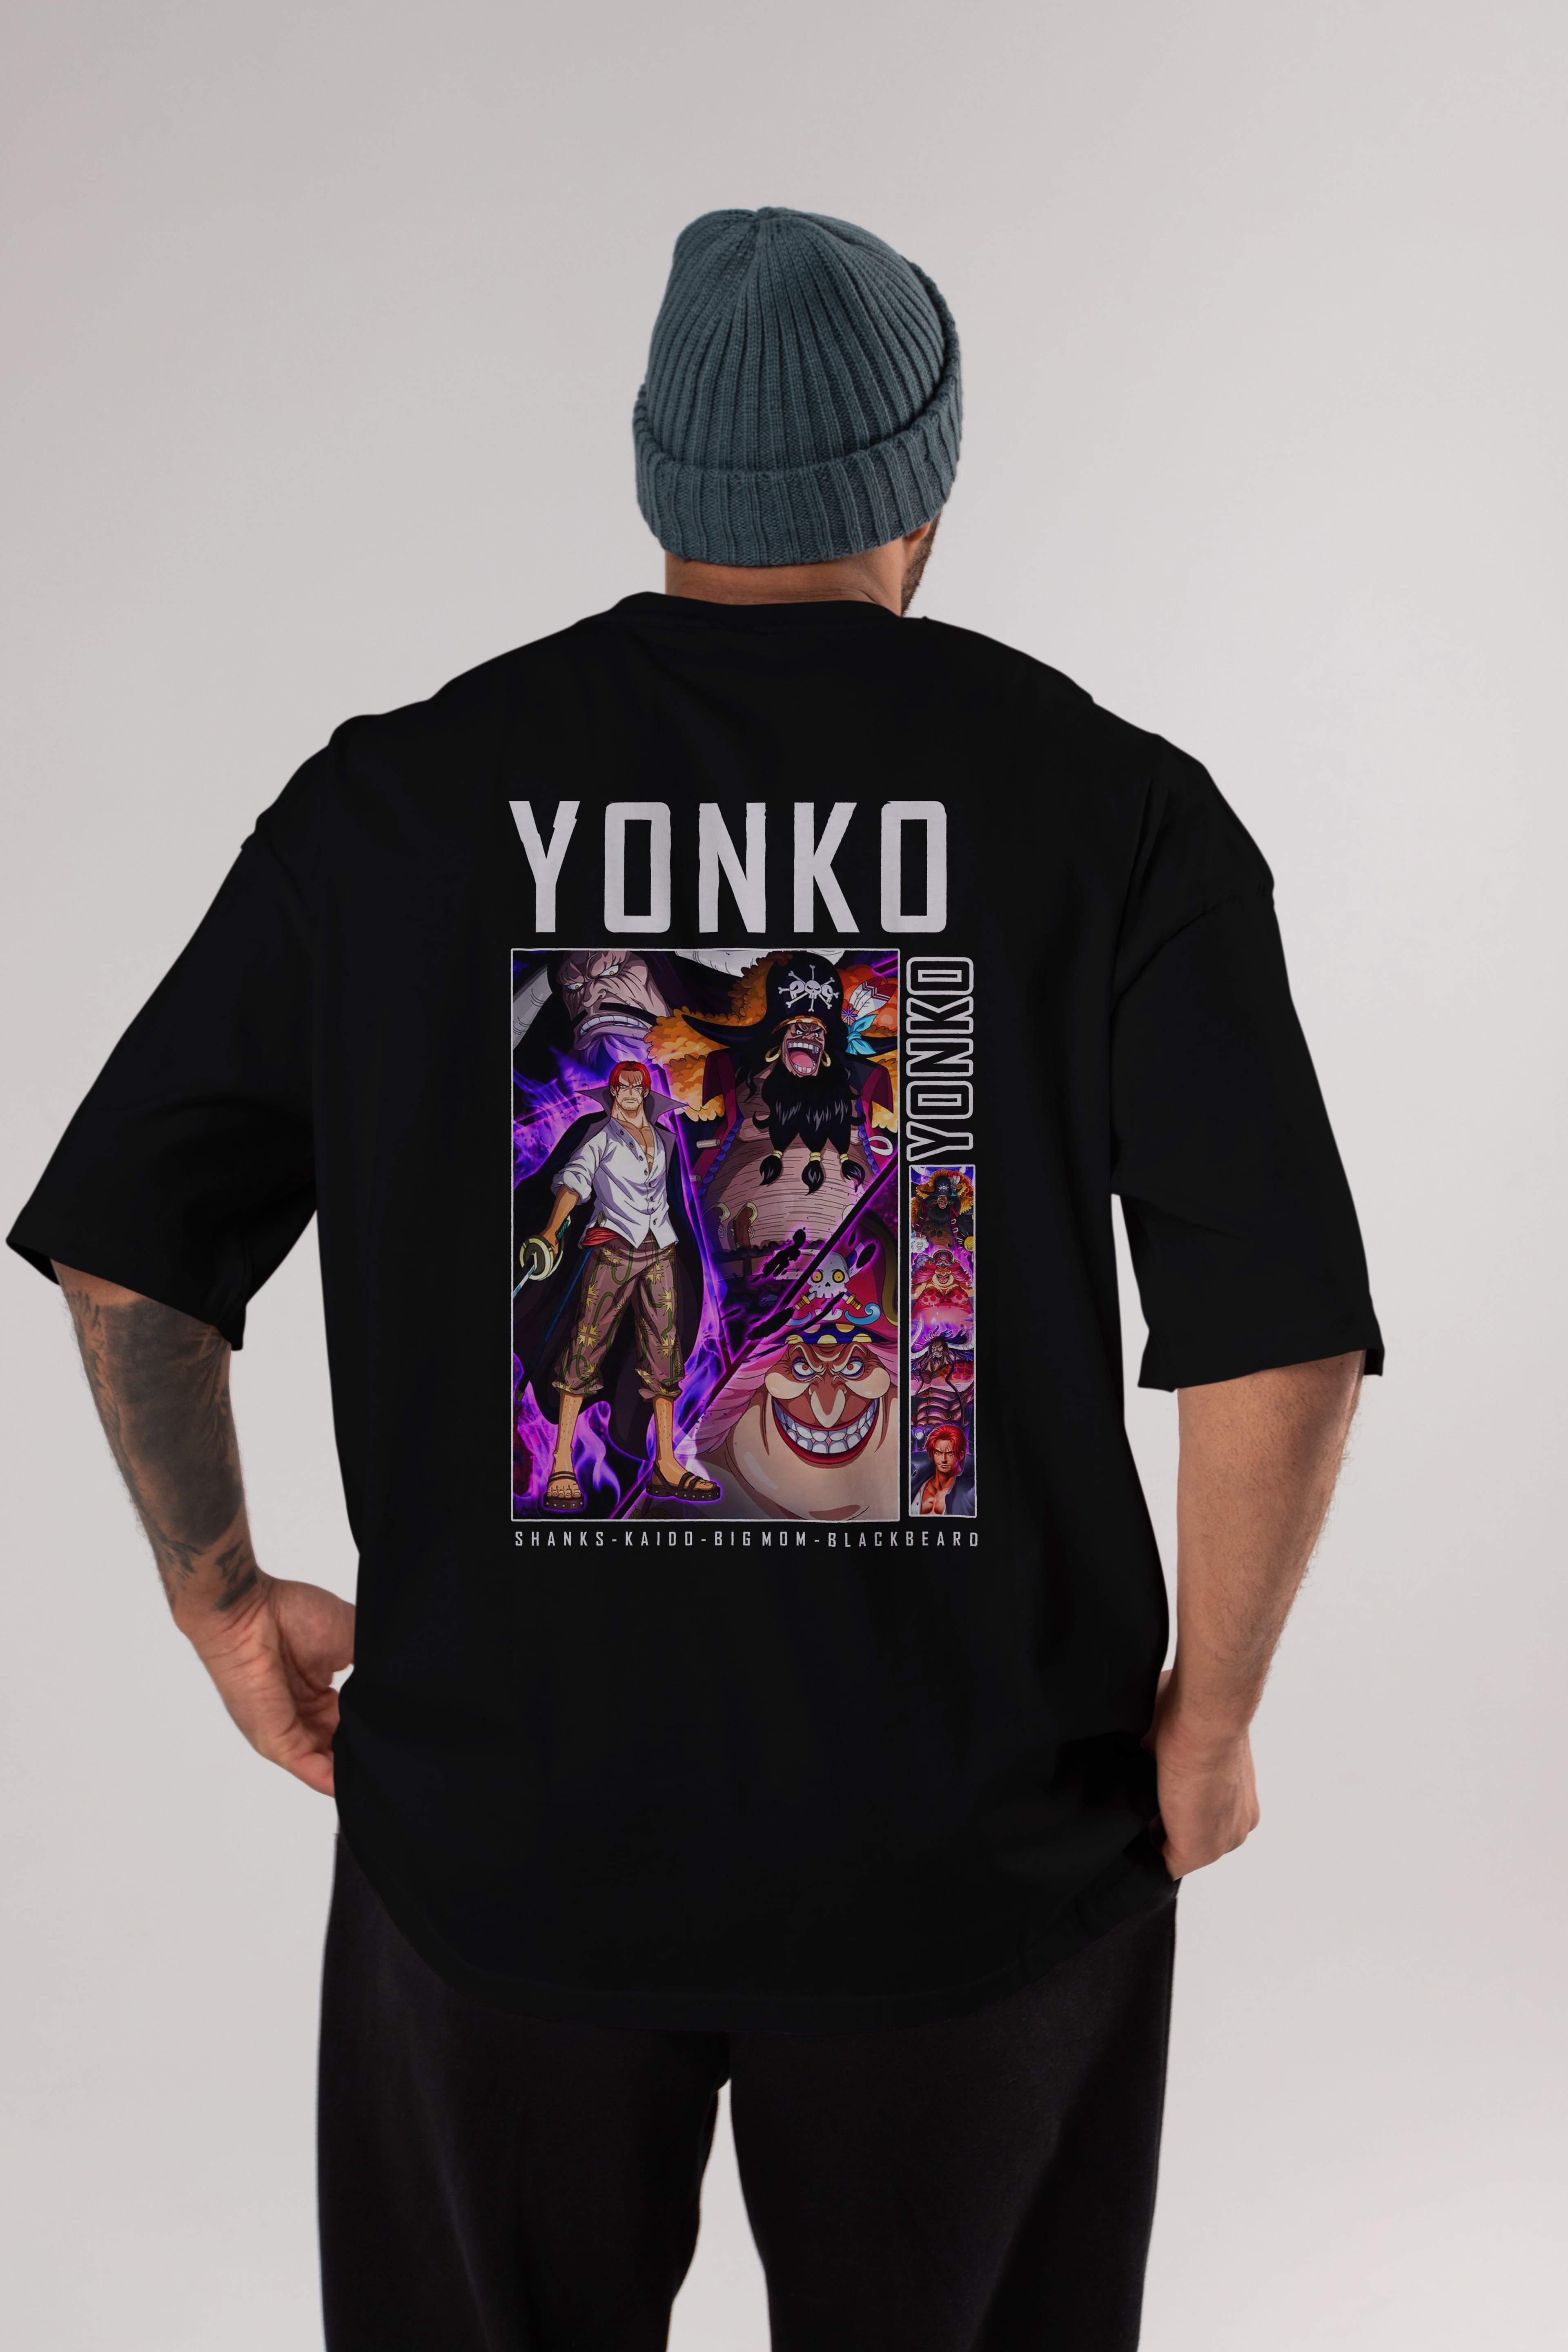 Yonko Anime Arka Baskılı Oversize t-shirt Erkek Kadın Unisex %100 pamuk tişort